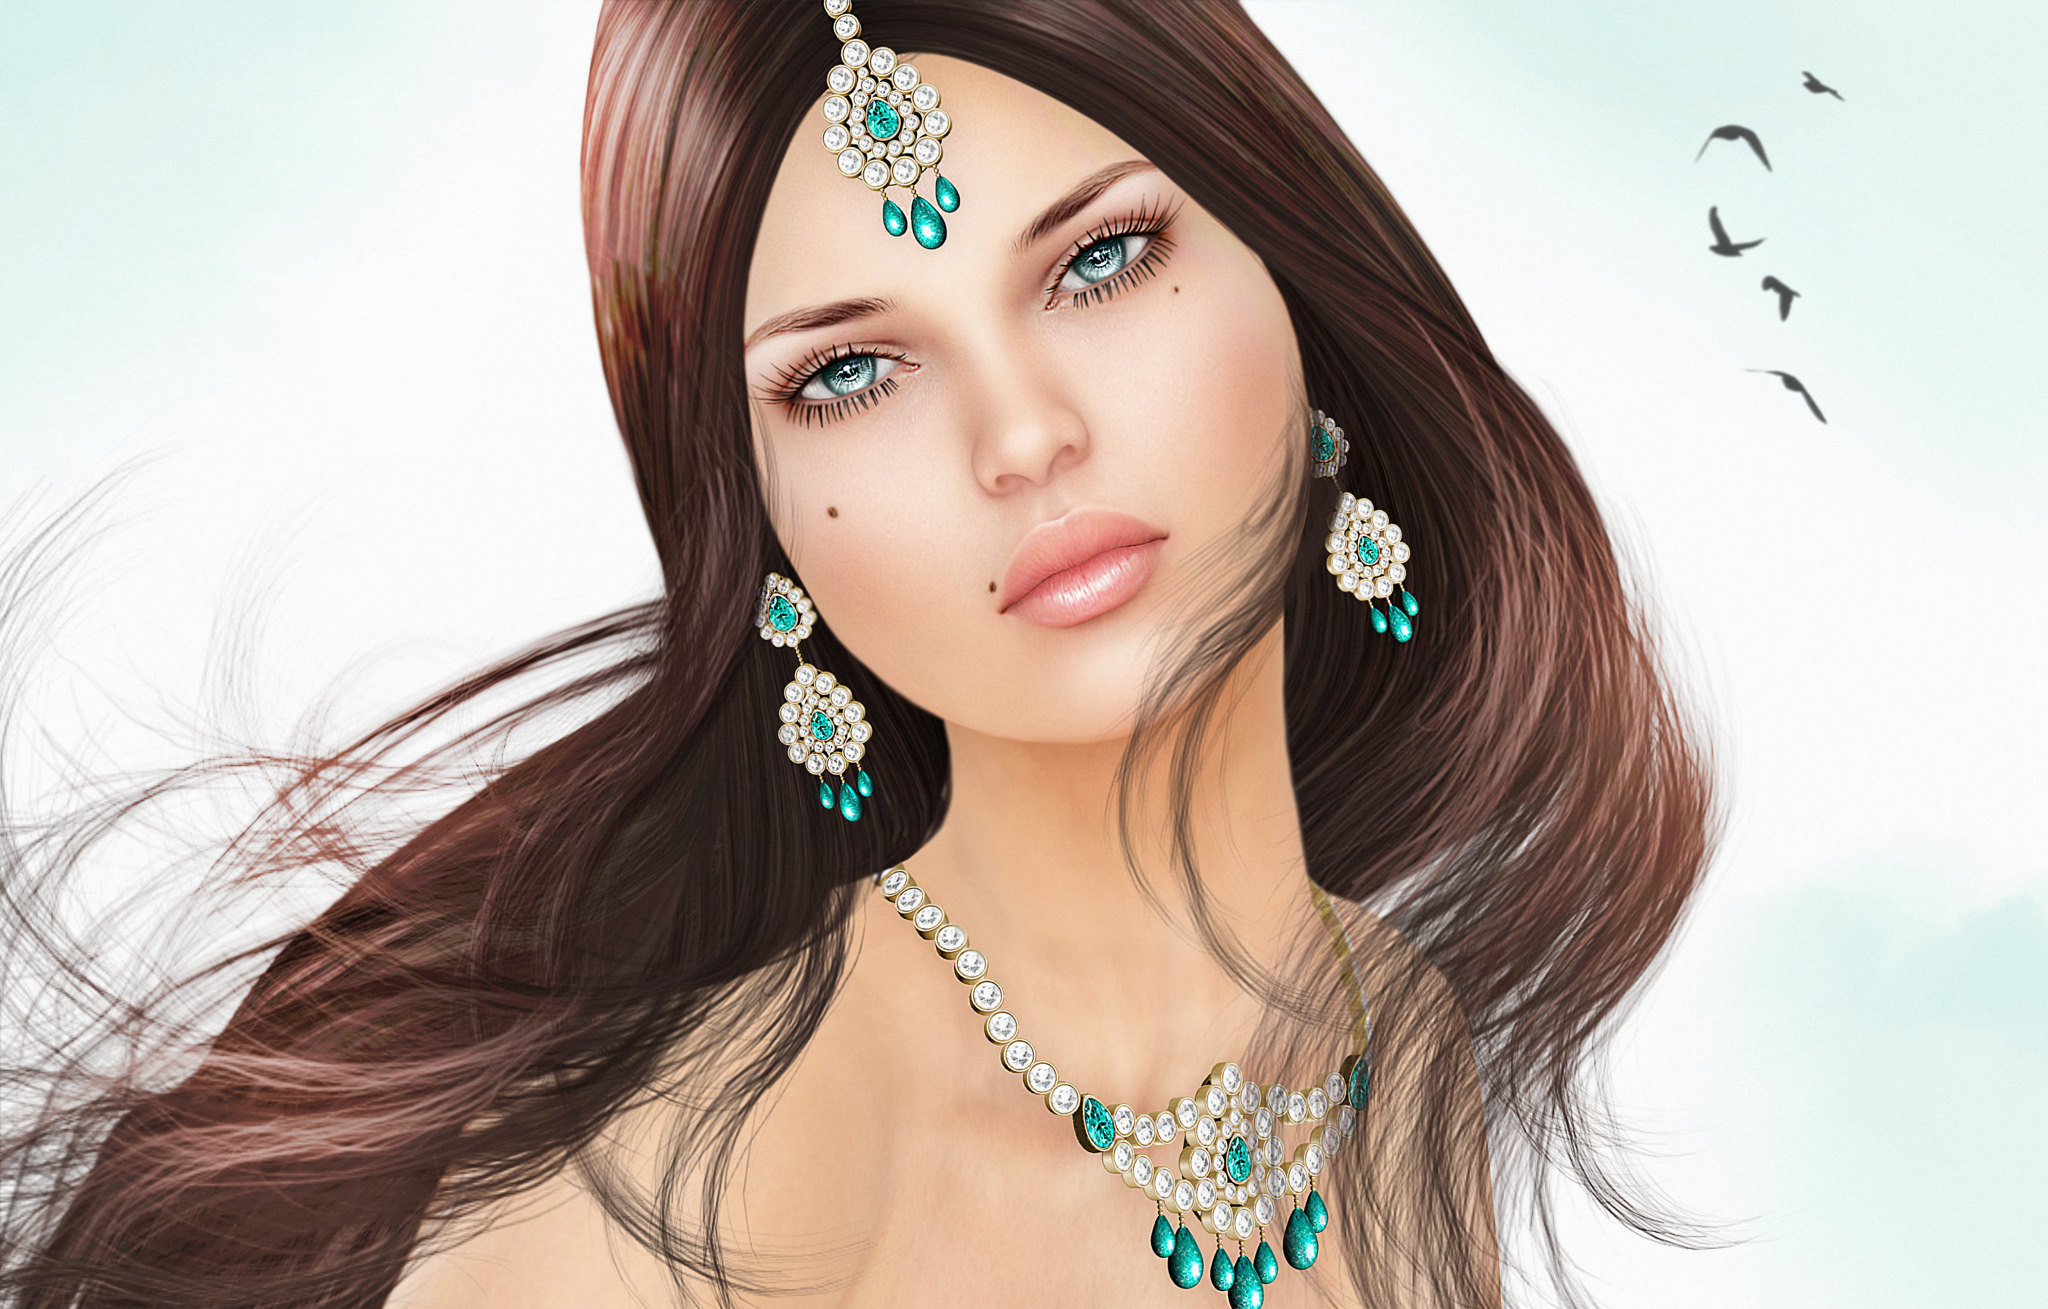 Bindi Diamond Earrings Fantasy Jewelry Turquoise Woman 2048x1309